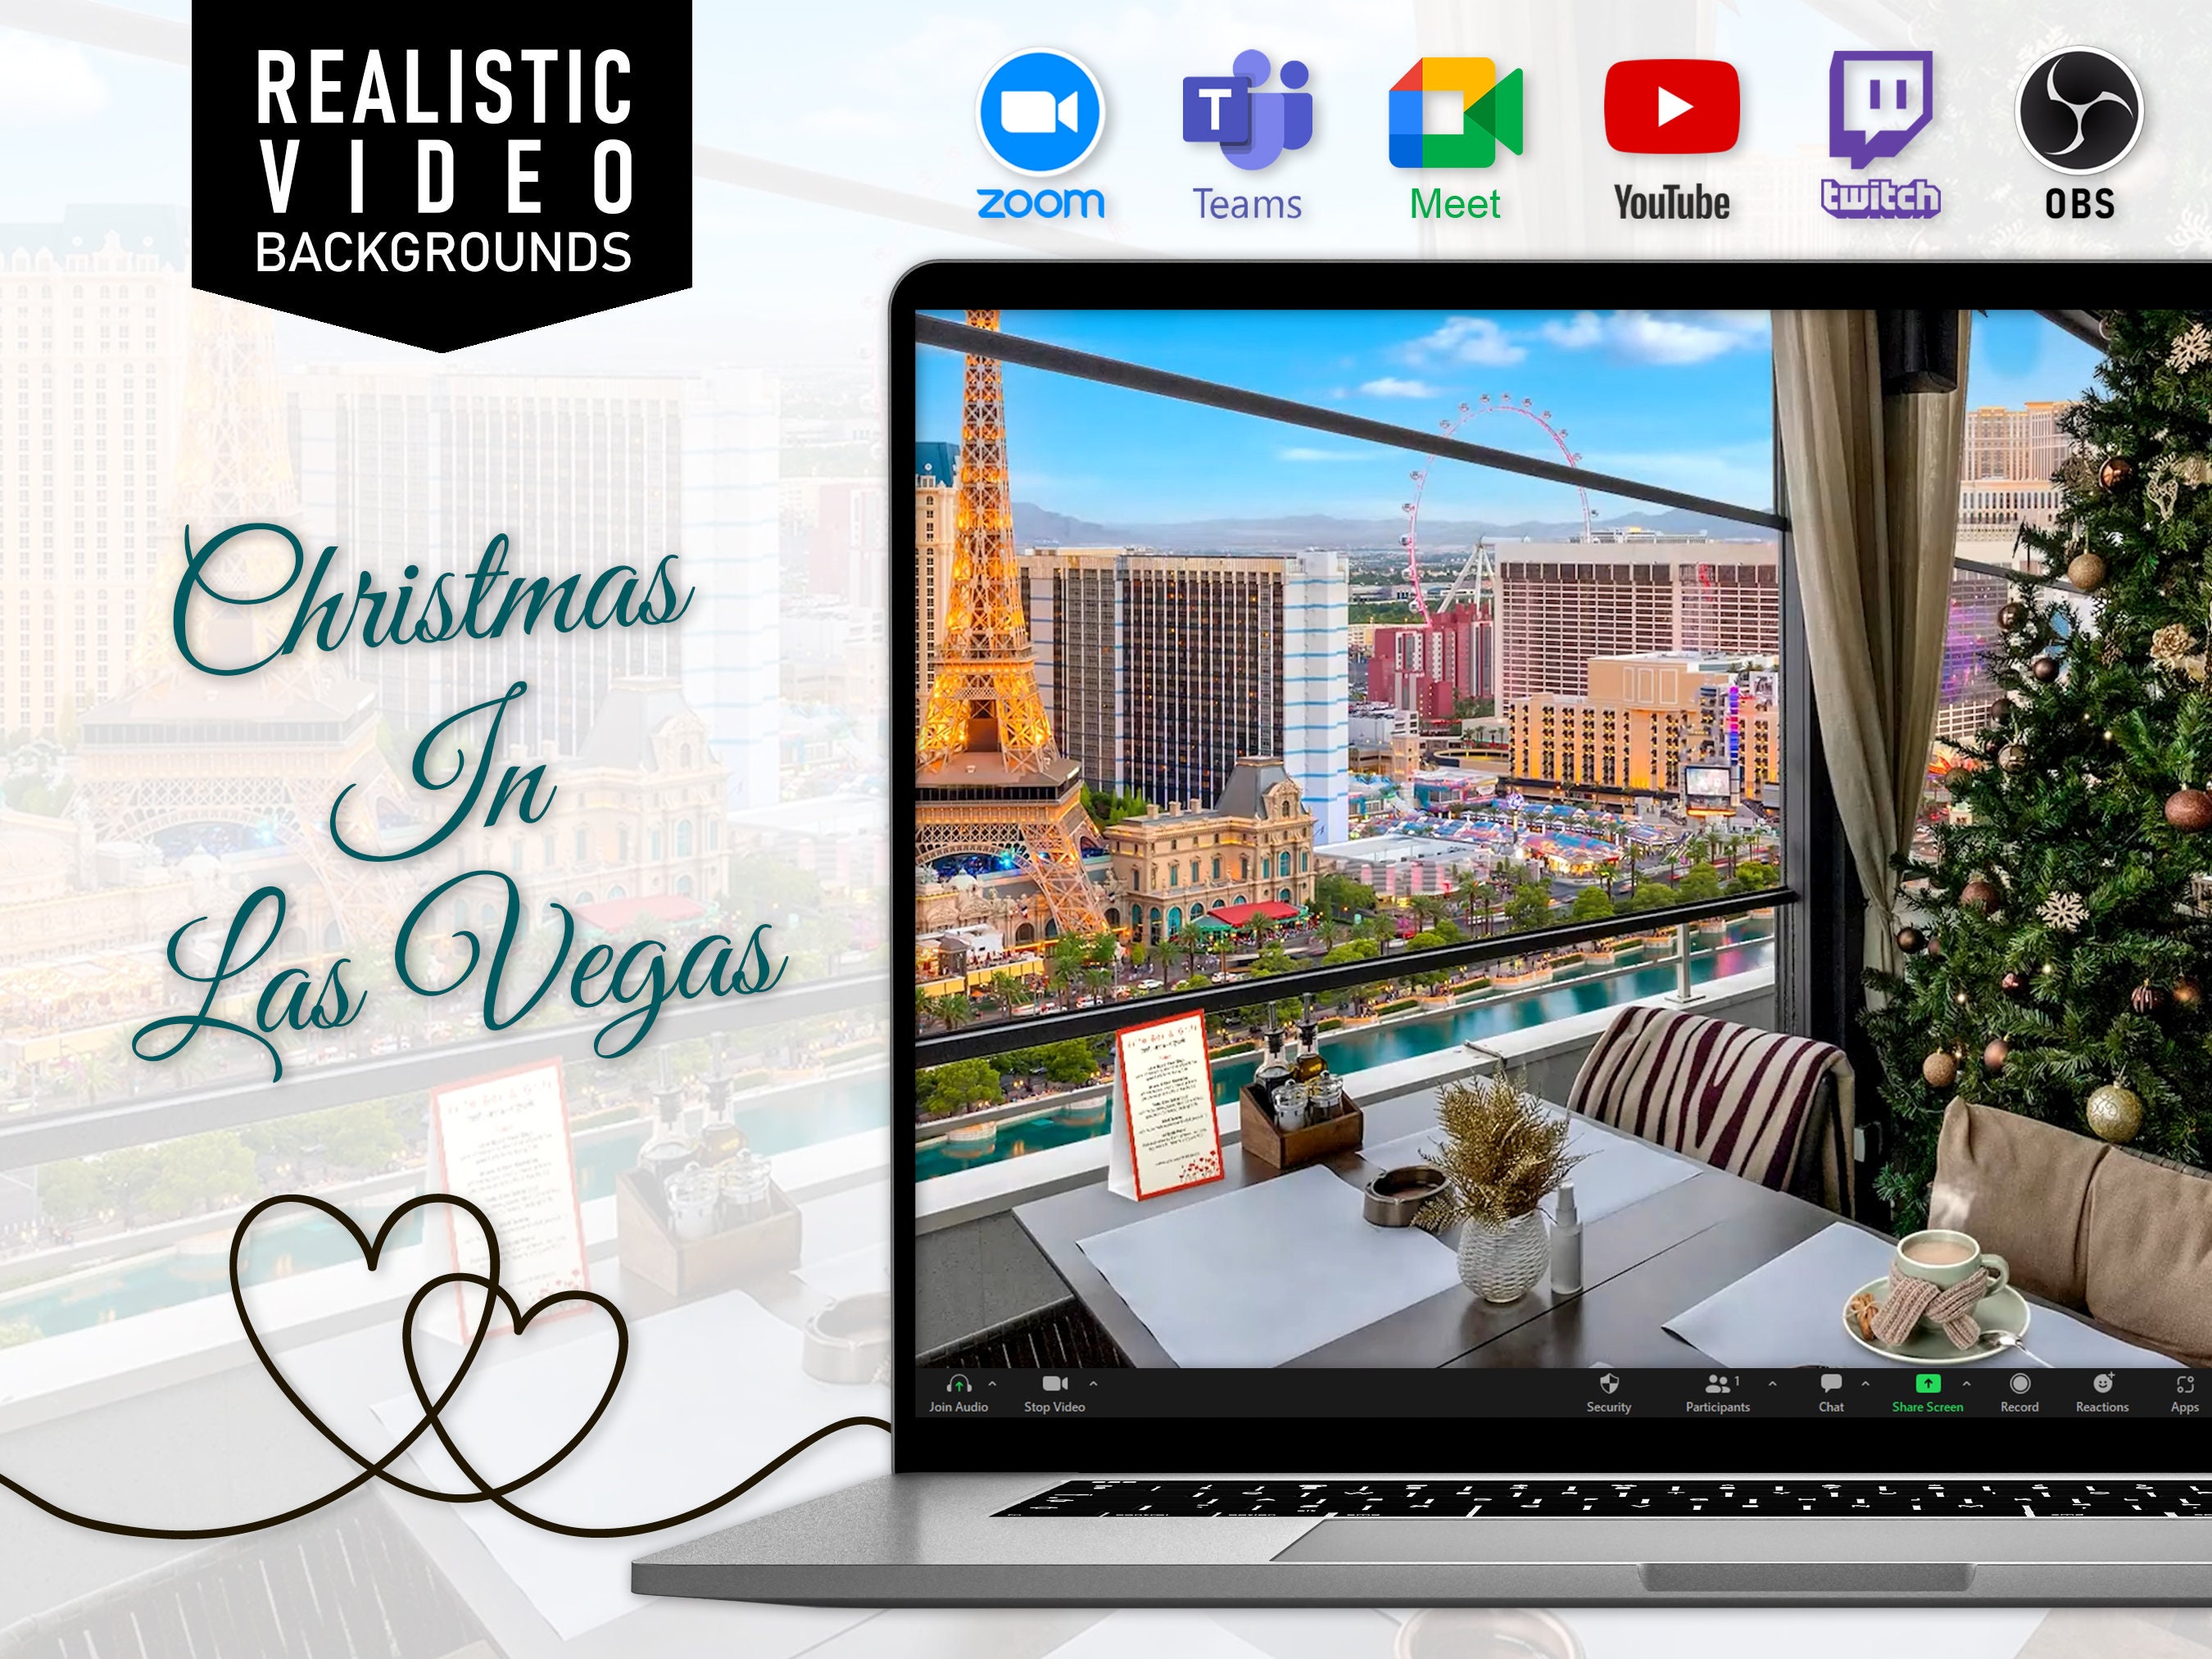 Las Vegas là một điểm đến tuyệt vời để đón mùa Giáng sinh. Nếu bạn không thể đến đó, hãy cảm nhận không khí sôi động này thông qua những hình ảnh phông nền động của chúng tôi. Đội nhóm của chúng tôi trang trí vô số hình ảnh đặc trưng cho Las Vegas vào mùa Giáng sinh.